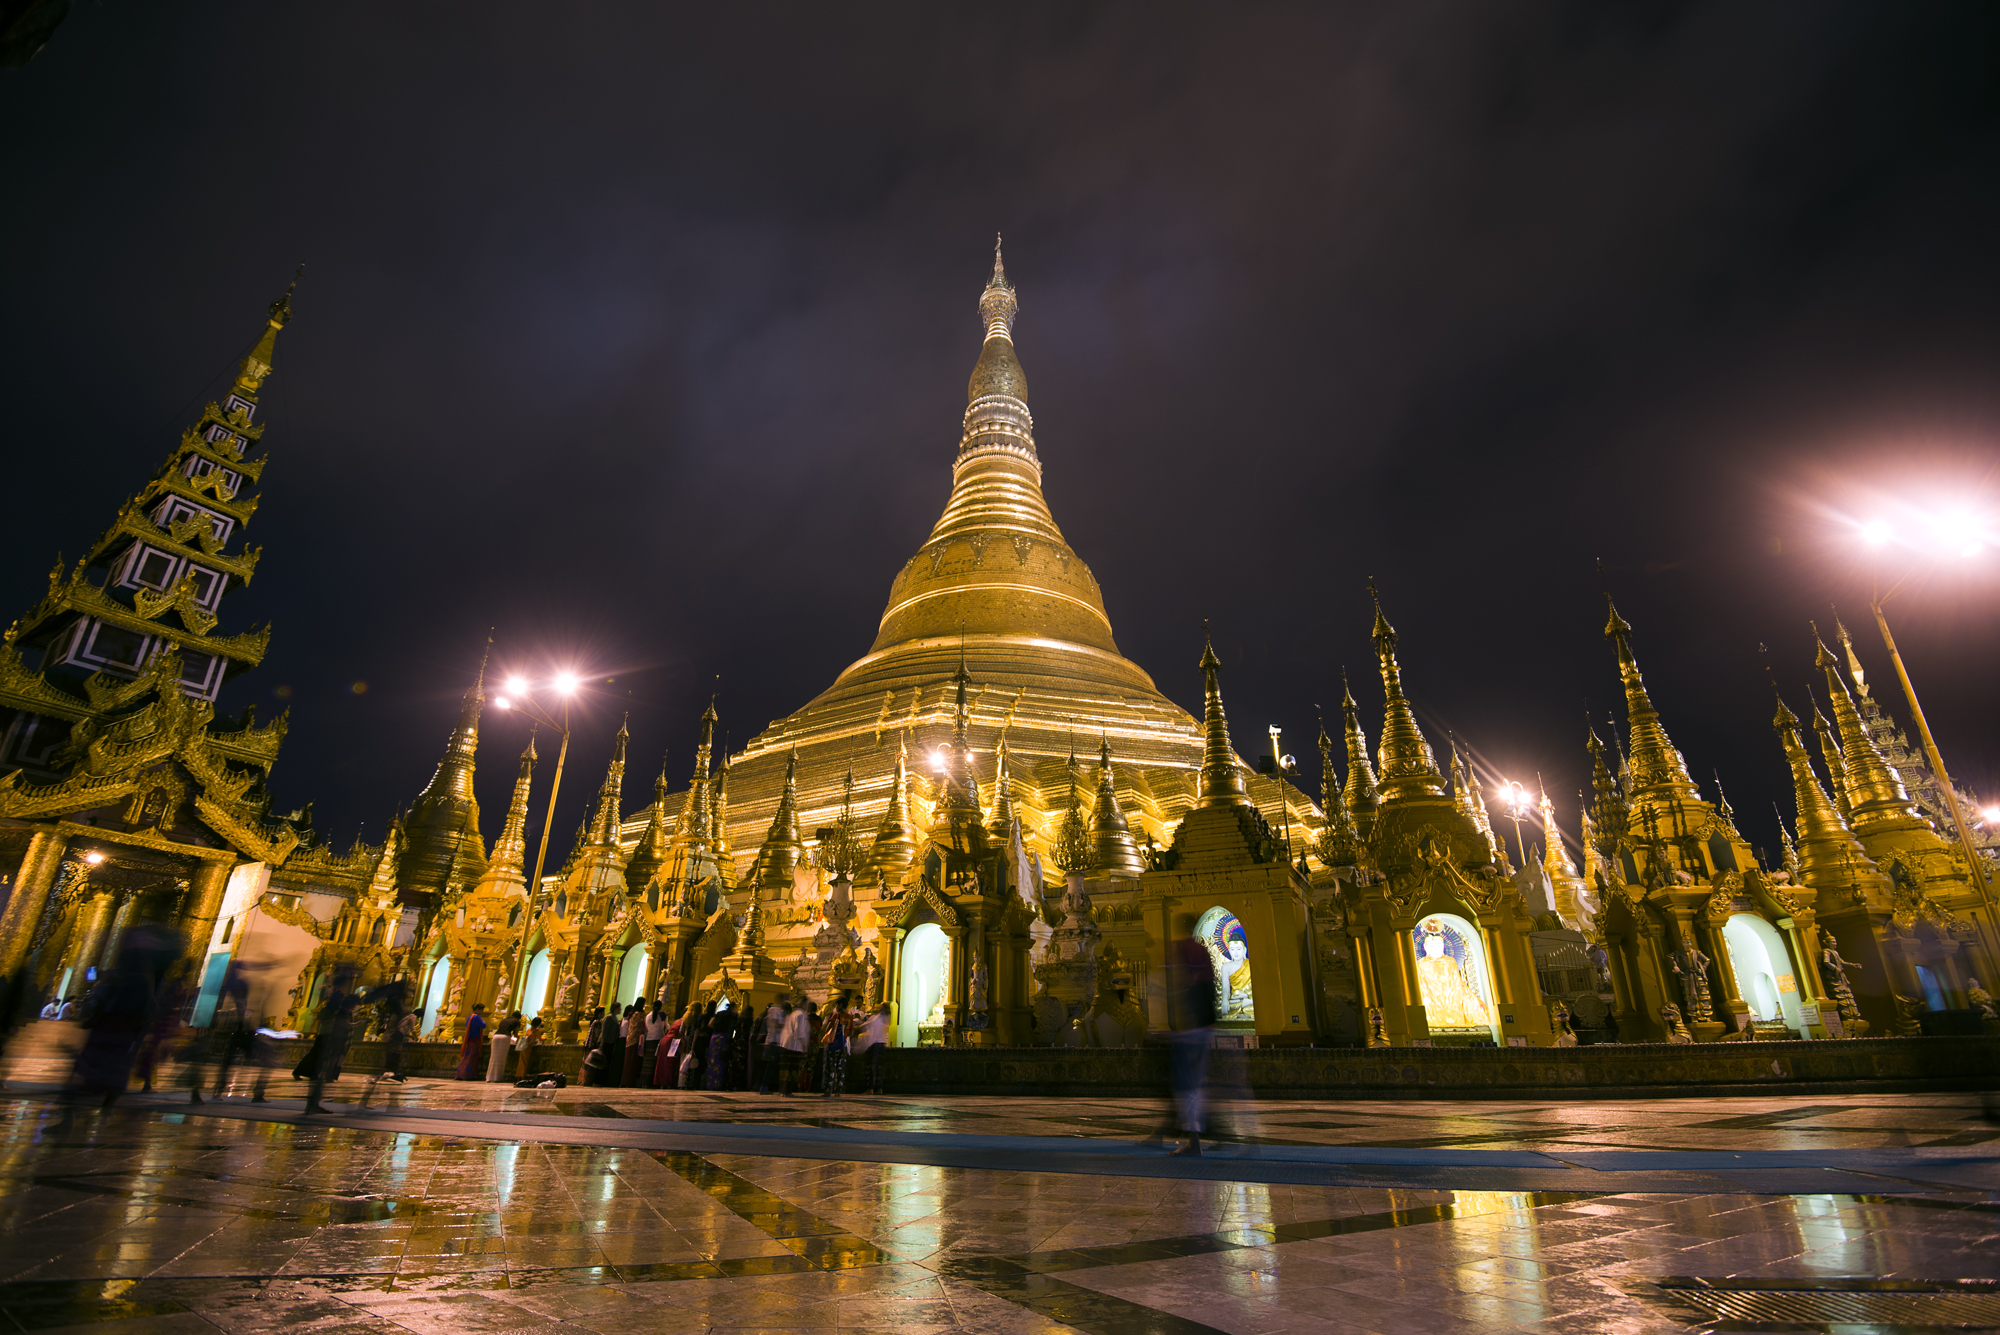 Schwedagon Pagoda 